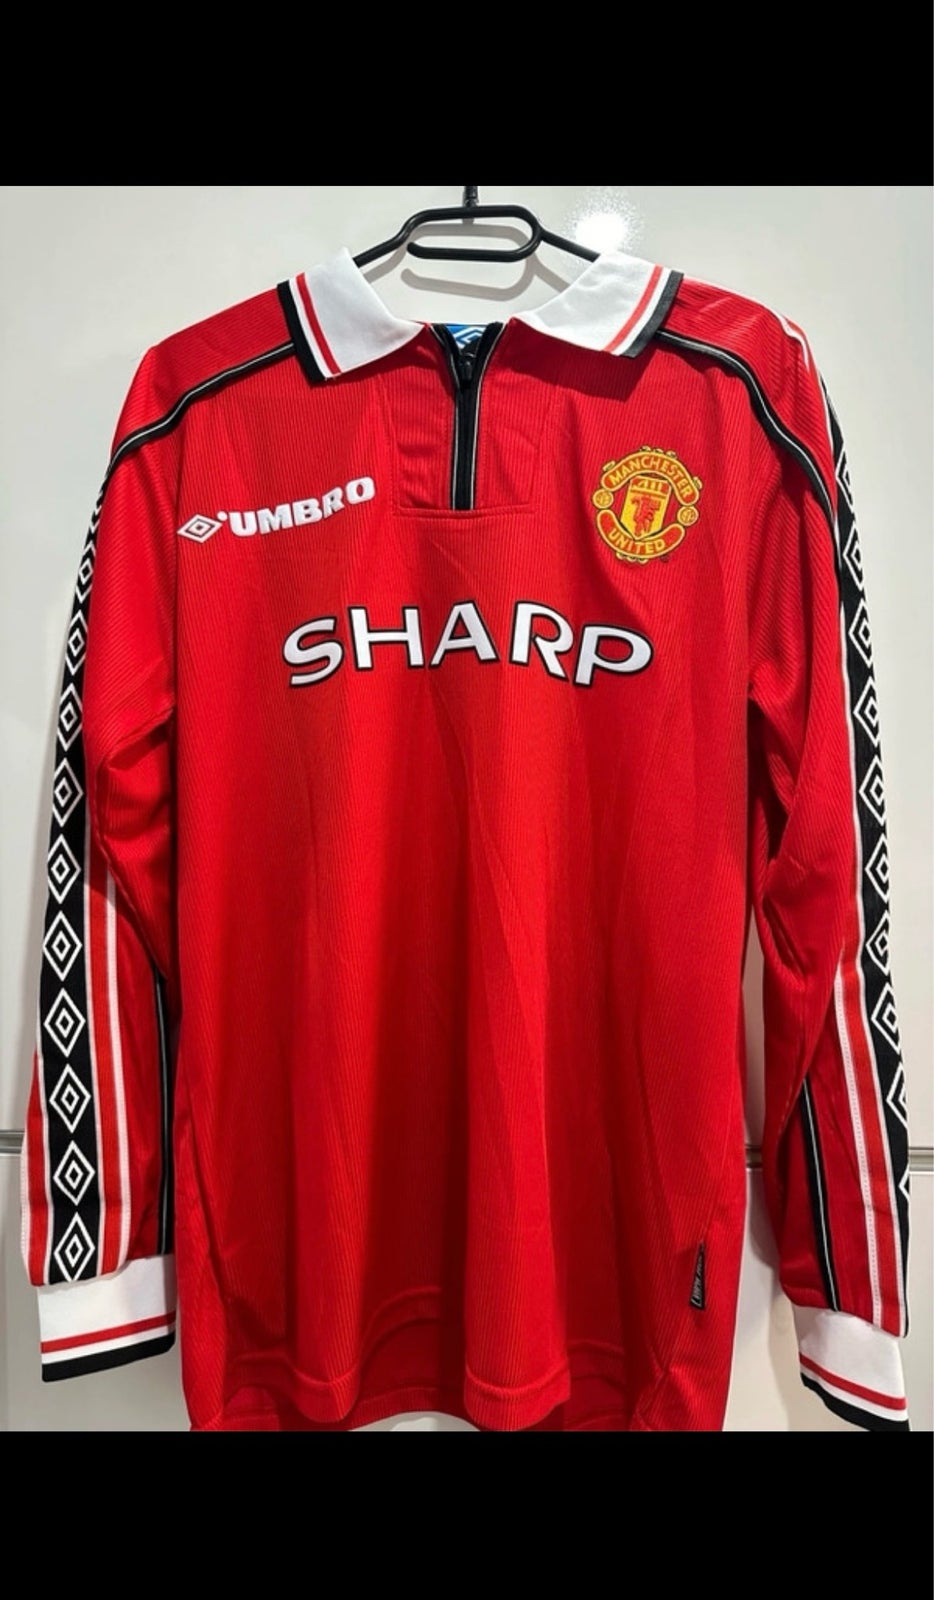 Fodboldtrøje, Manchester United 98/99 remake langærmet